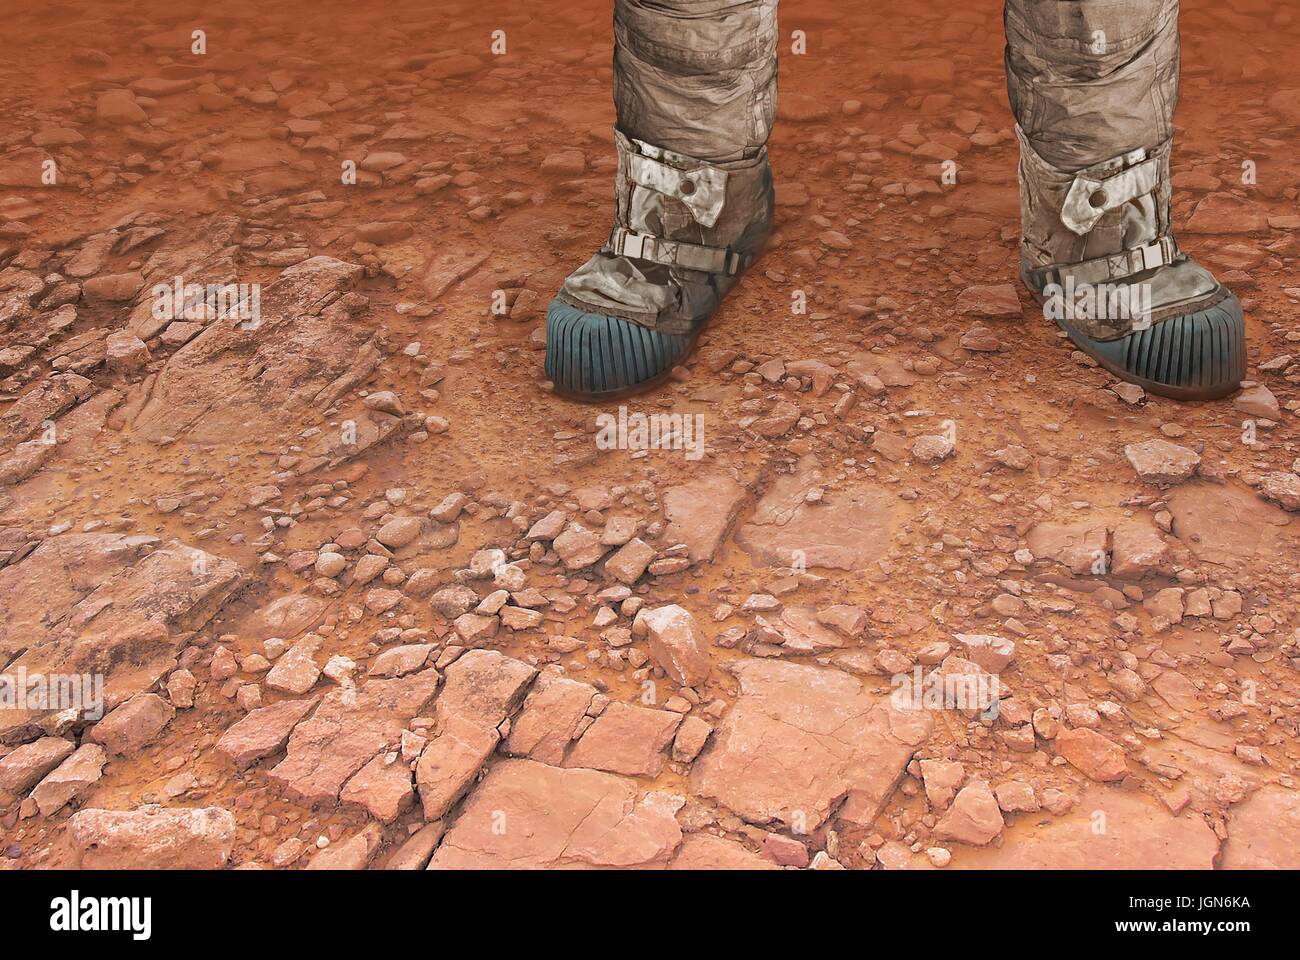 Les humains sur Mars, artwork. Une illustration d'une paire de jambes sur la surface de la planète rouge, peut-être appartenant à de futurs astronautes â€" ou les touristes. Un des droits de l'expédition sur Mars serait une coûteuse, dangereuse mais entreprise enrichissante. Banque D'Images